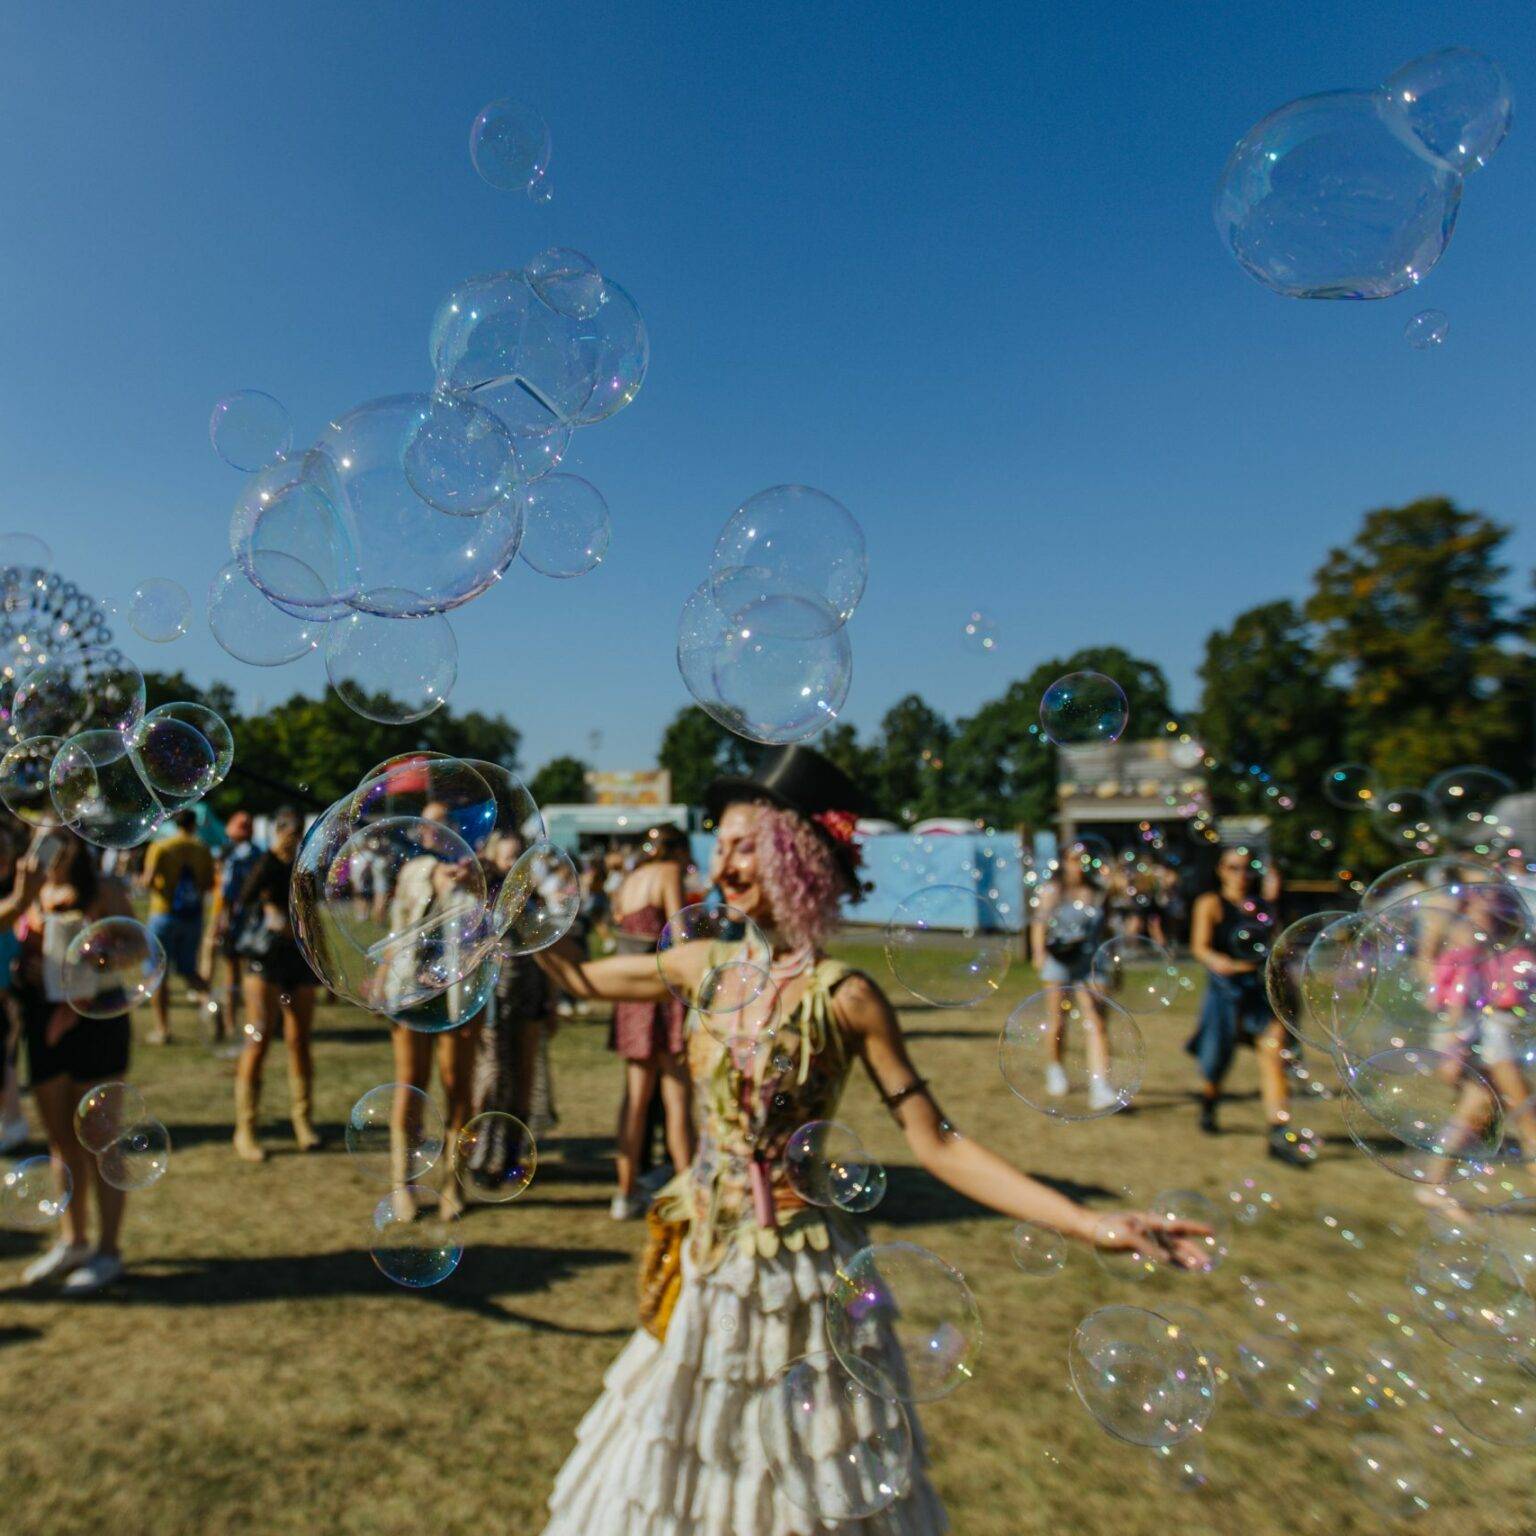 Eine Frau auf dem Festivalgelände umgeben von Seifenblasen.